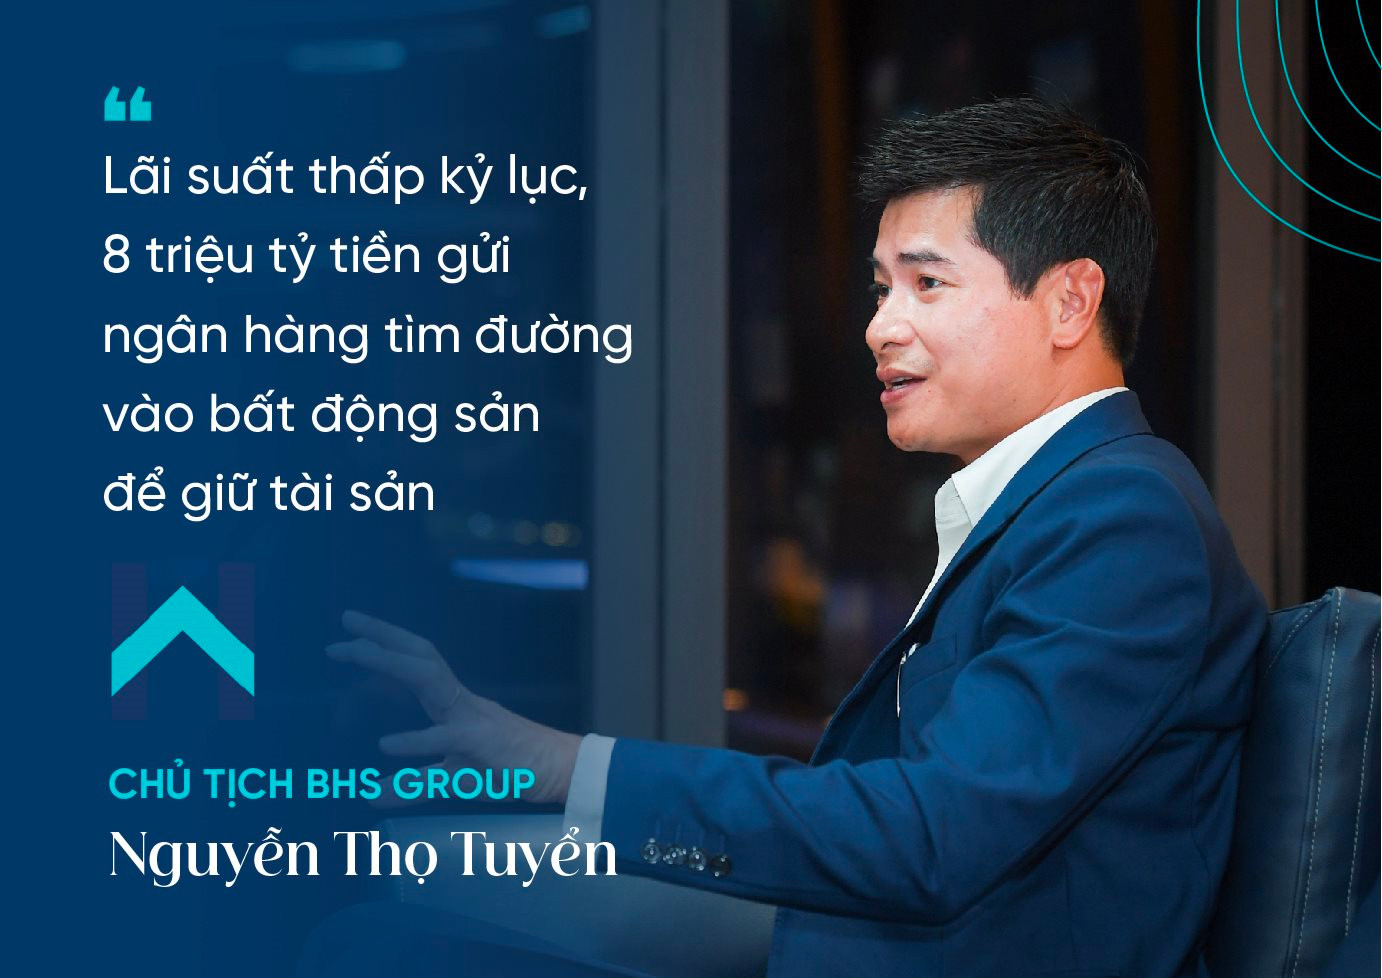 Chủ tịch BHS Group Nguyễn Thọ Tuyển: Dòng tiền lớn như một quả bom nguyên tử đang “hâm nóng” bất động sản Hà Nội, tiếp theo sẽ kích nổ hàng loạt khu vực- Ảnh 2.